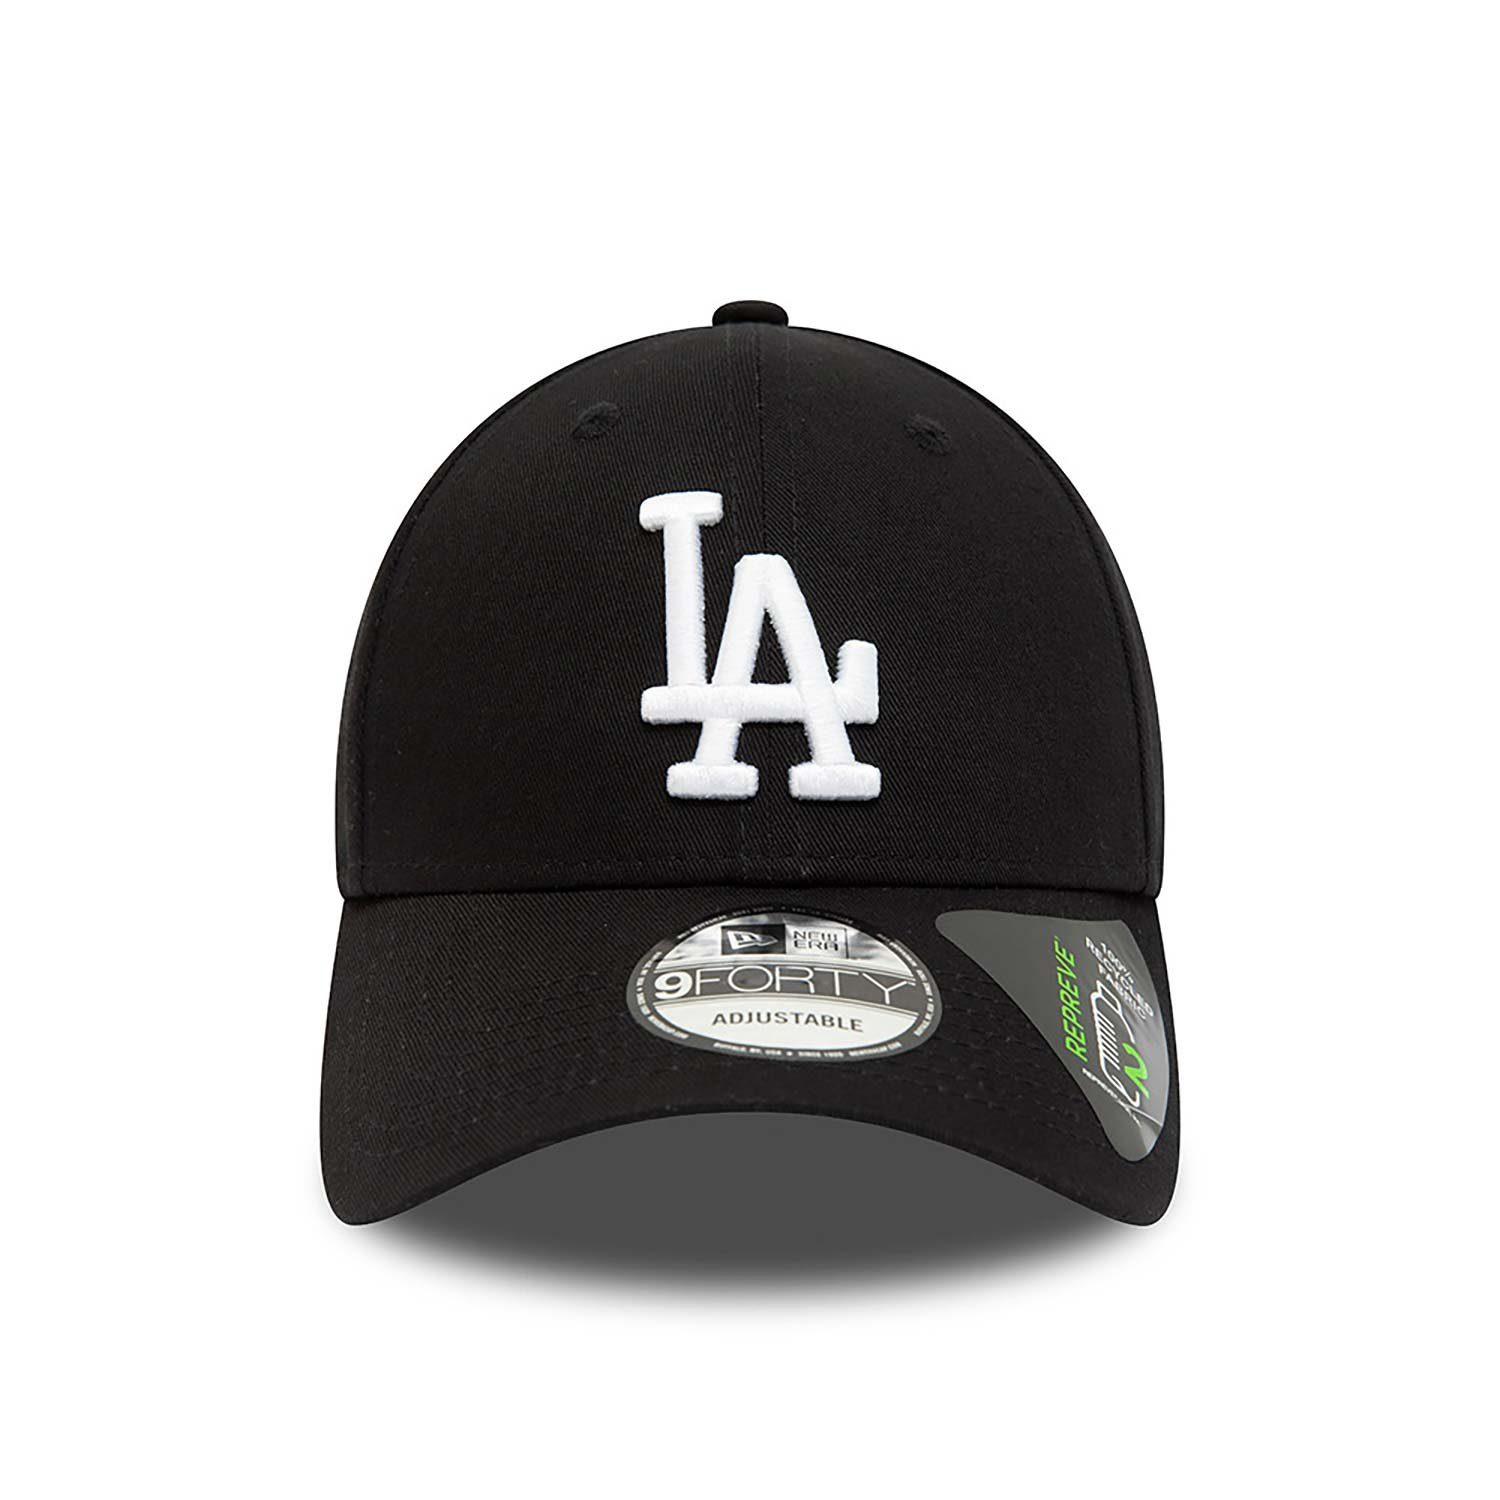 New LA Baseball Cap Era Dodgers